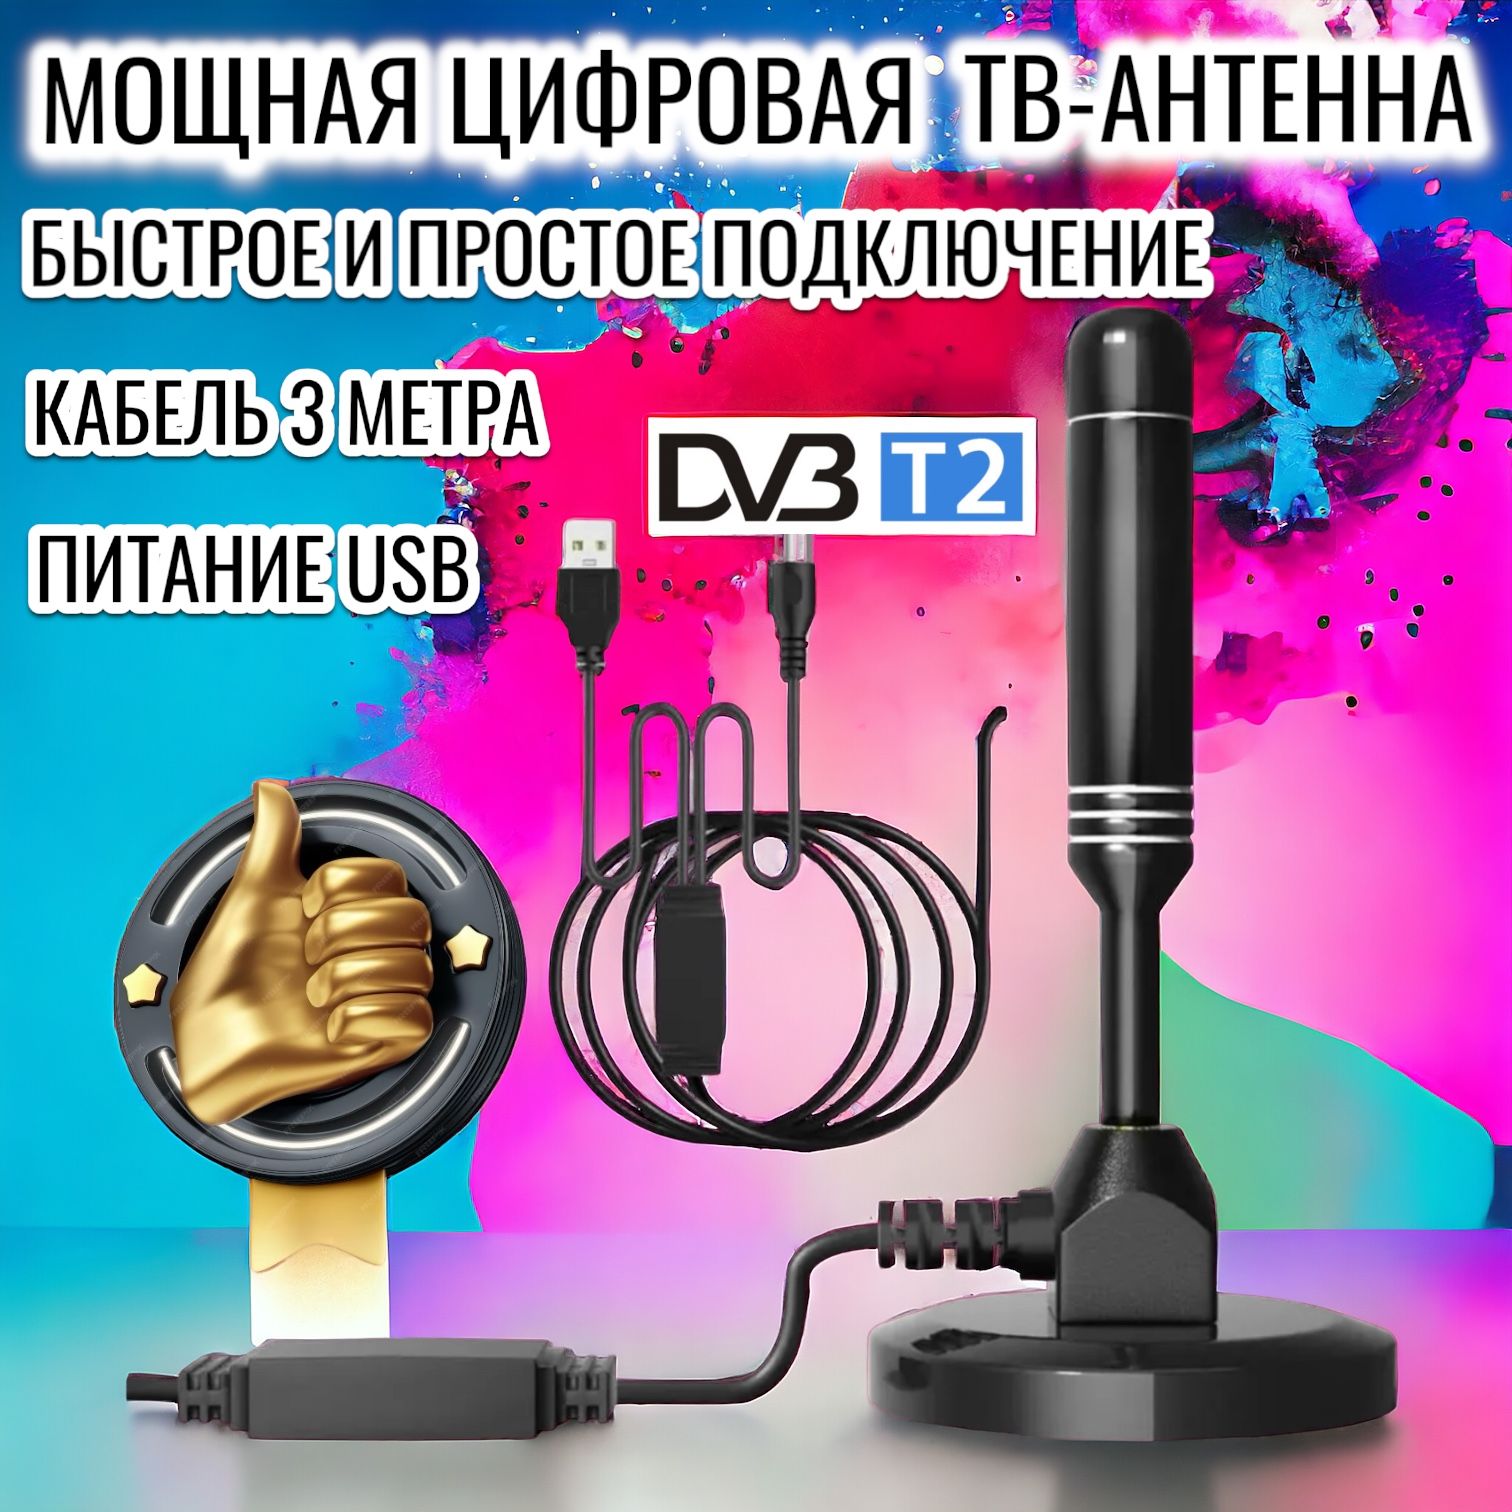 Купить антенну для цифрового телевидения по выгодной цене в Крыму. Критерии выбора ТВ-антенны